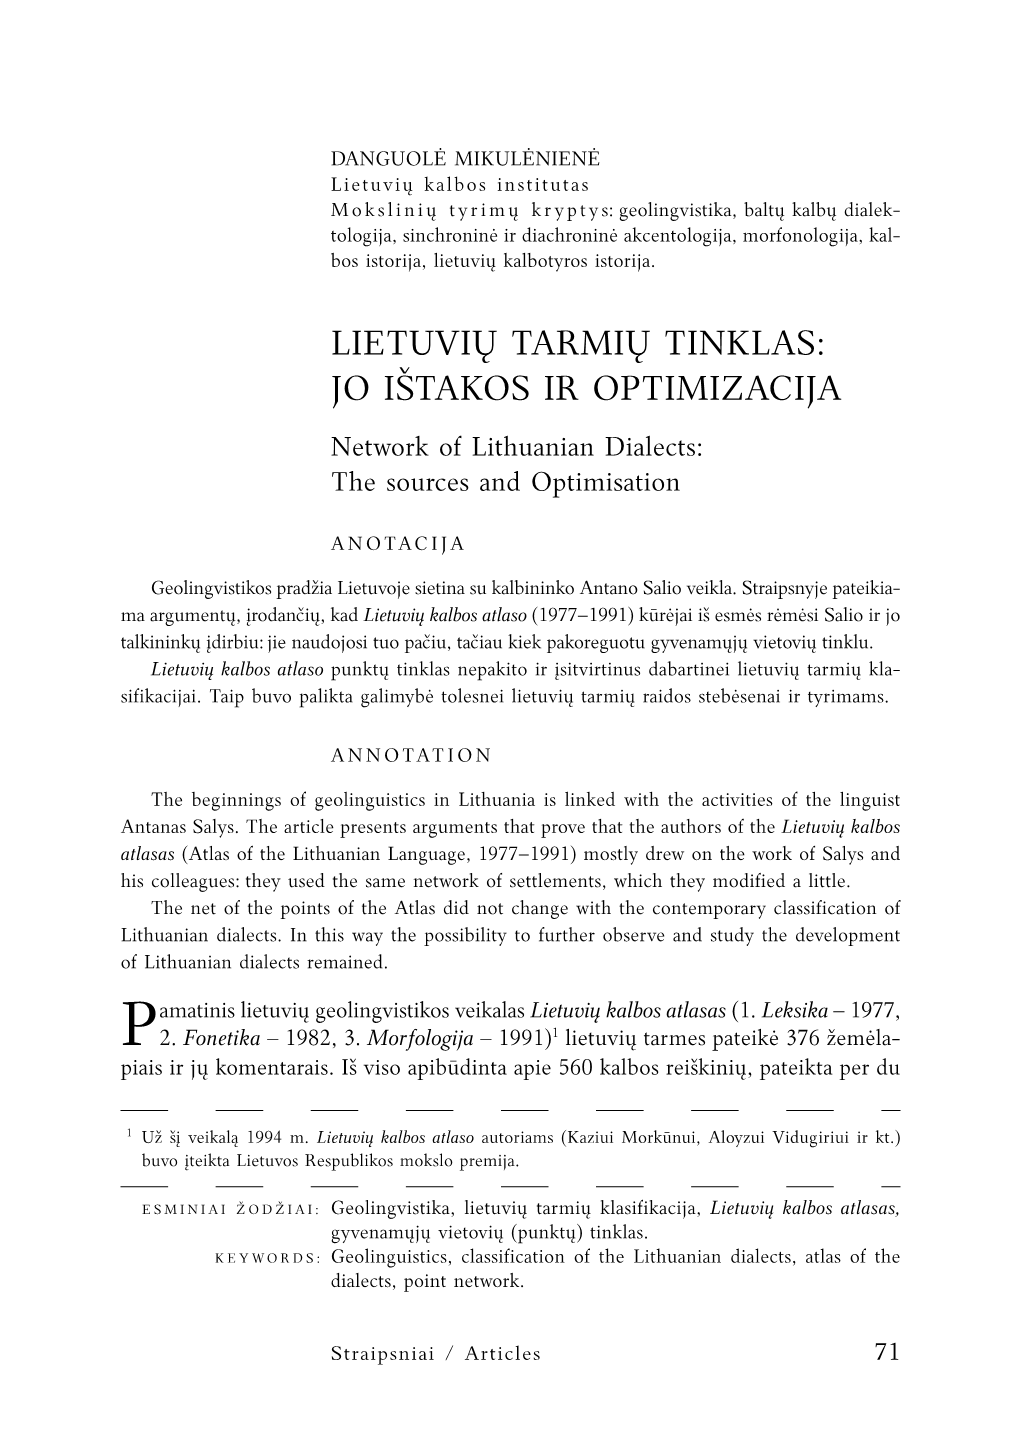 Lietuvių Tarmių Tinklas: Jo Ištakos IR OPTIMIZACIJA Network of Lithuanian Dialects: the Sources and Optimisation